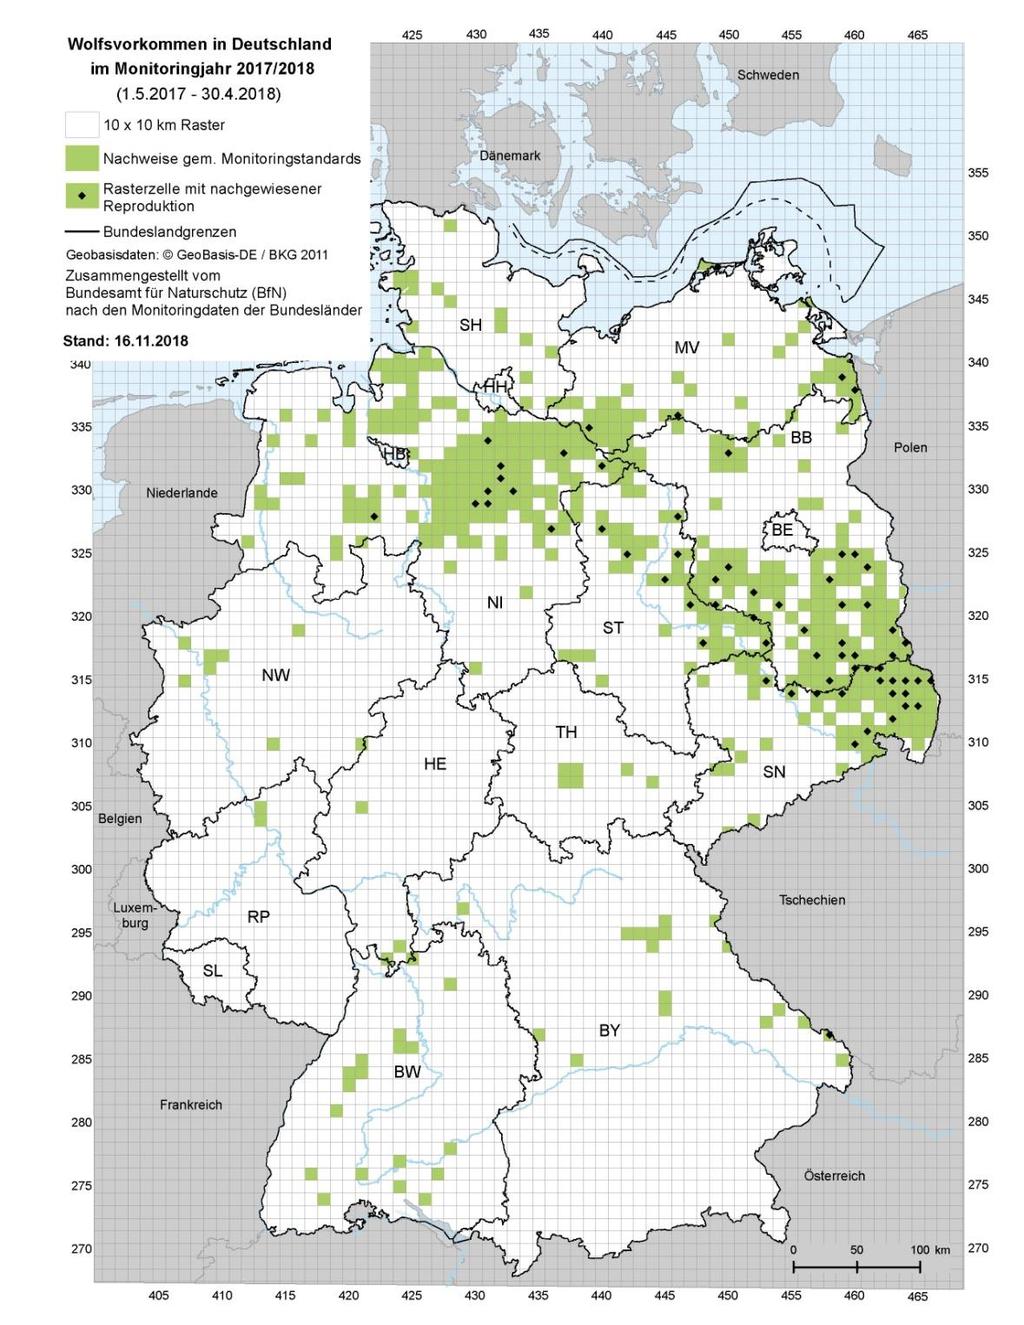 3.3 Vorkommensgebiet Abb. 5: Vorkommensgebiet von Wölfen in Deutschland im Monitoringjahr 2017/18.